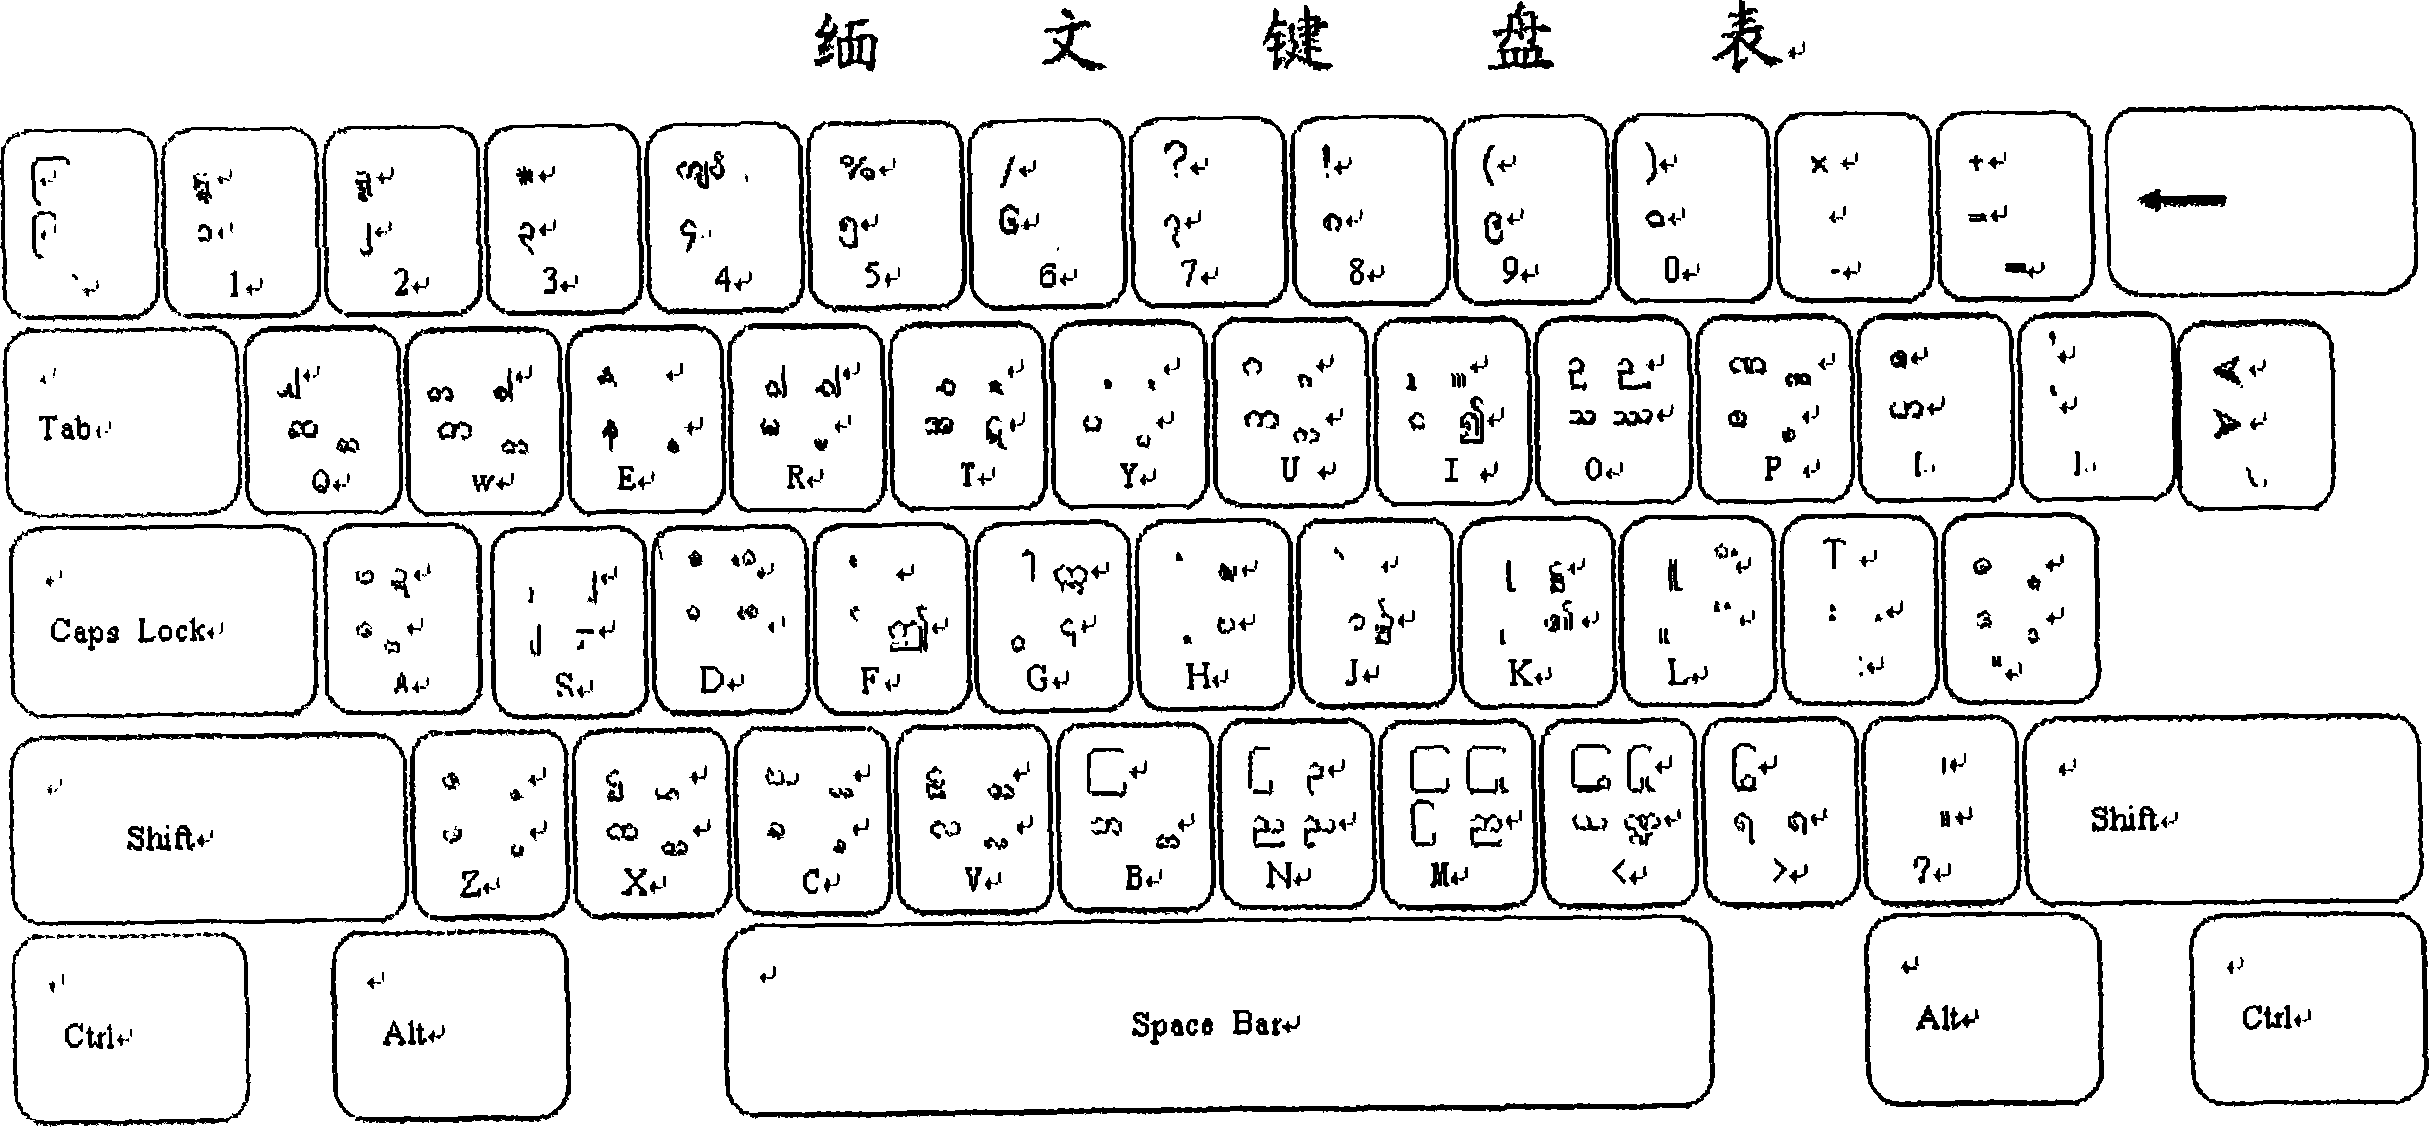 Burmese computer input method